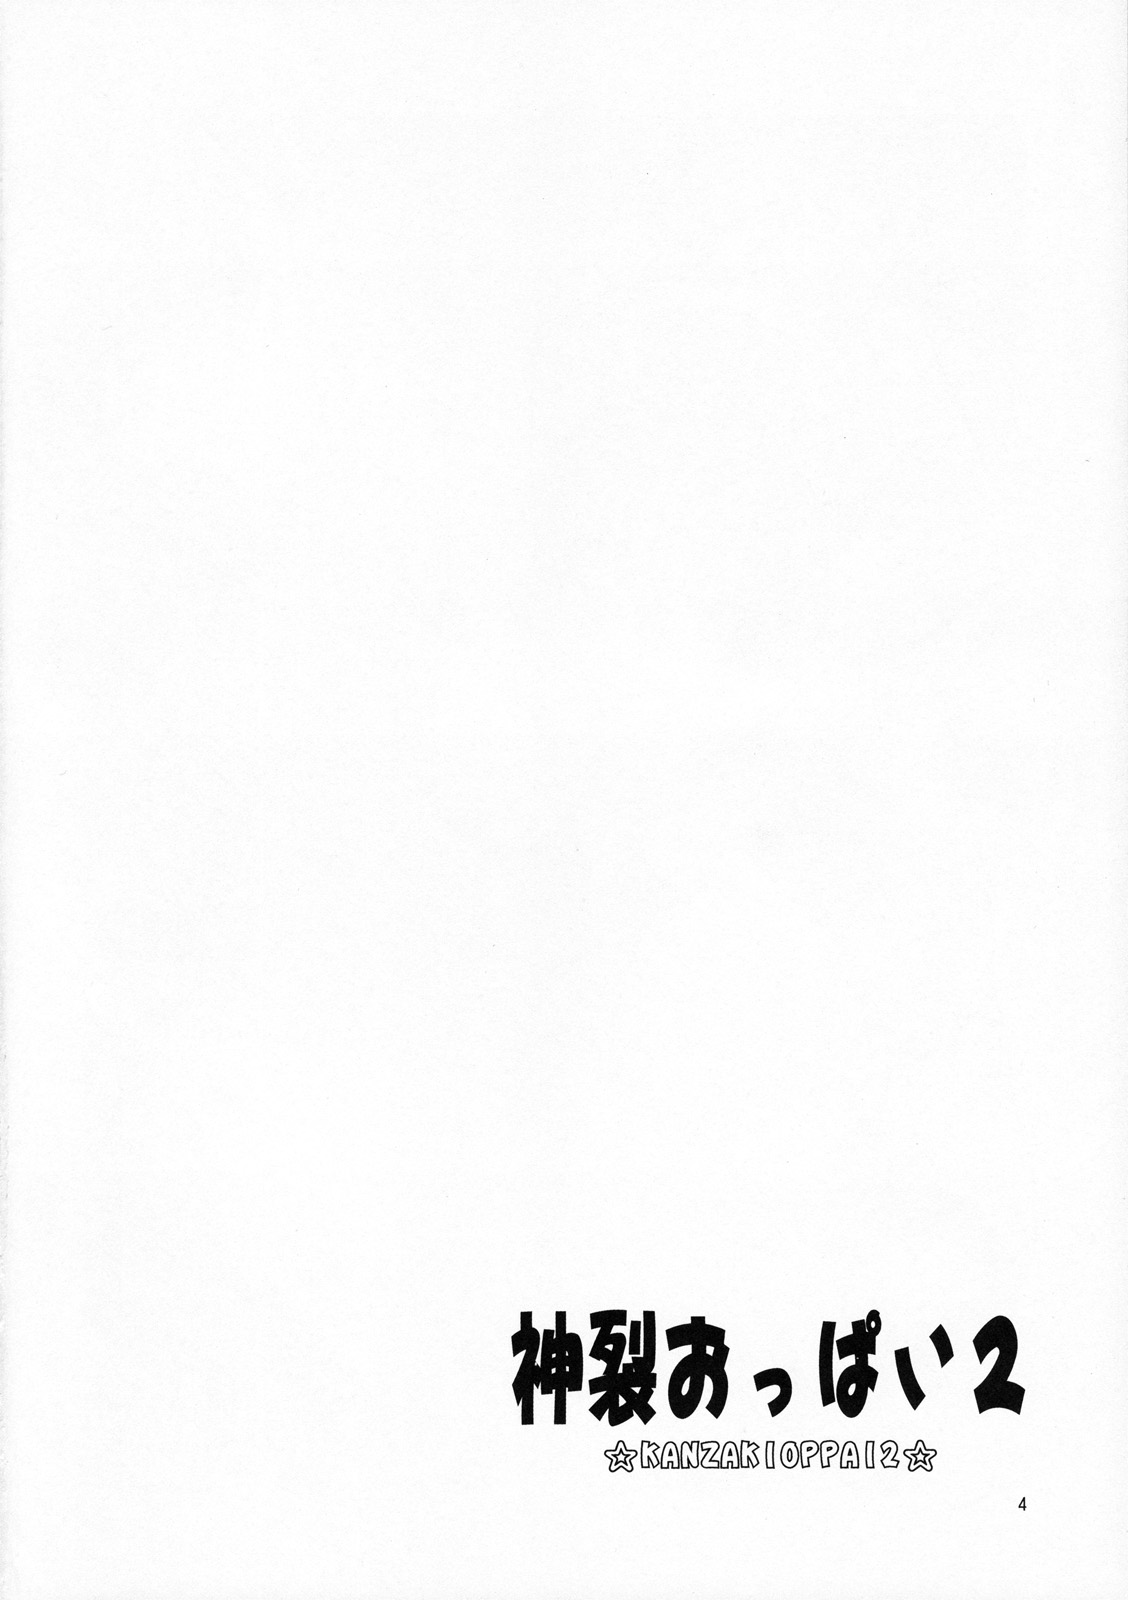 (C79) [Jack-O-Lantern] Kanzaki Oppai 2 (Toaru Majutsu no Index) (C79) (同人誌) [ぢゃっからんたん] 神裂おっぱい2 (とある魔術の禁書目録)